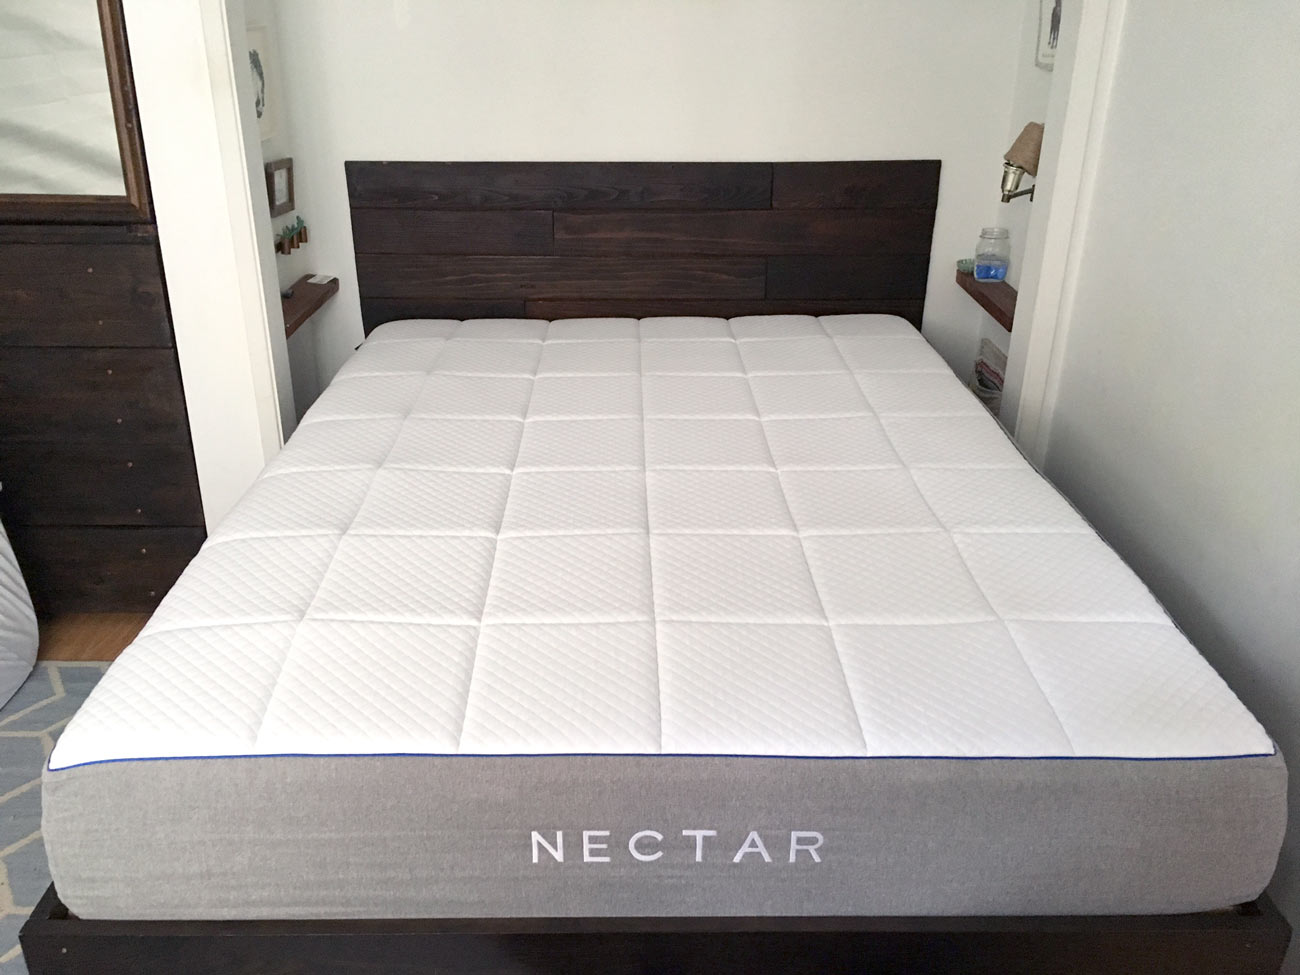 nectar mattress unboxing